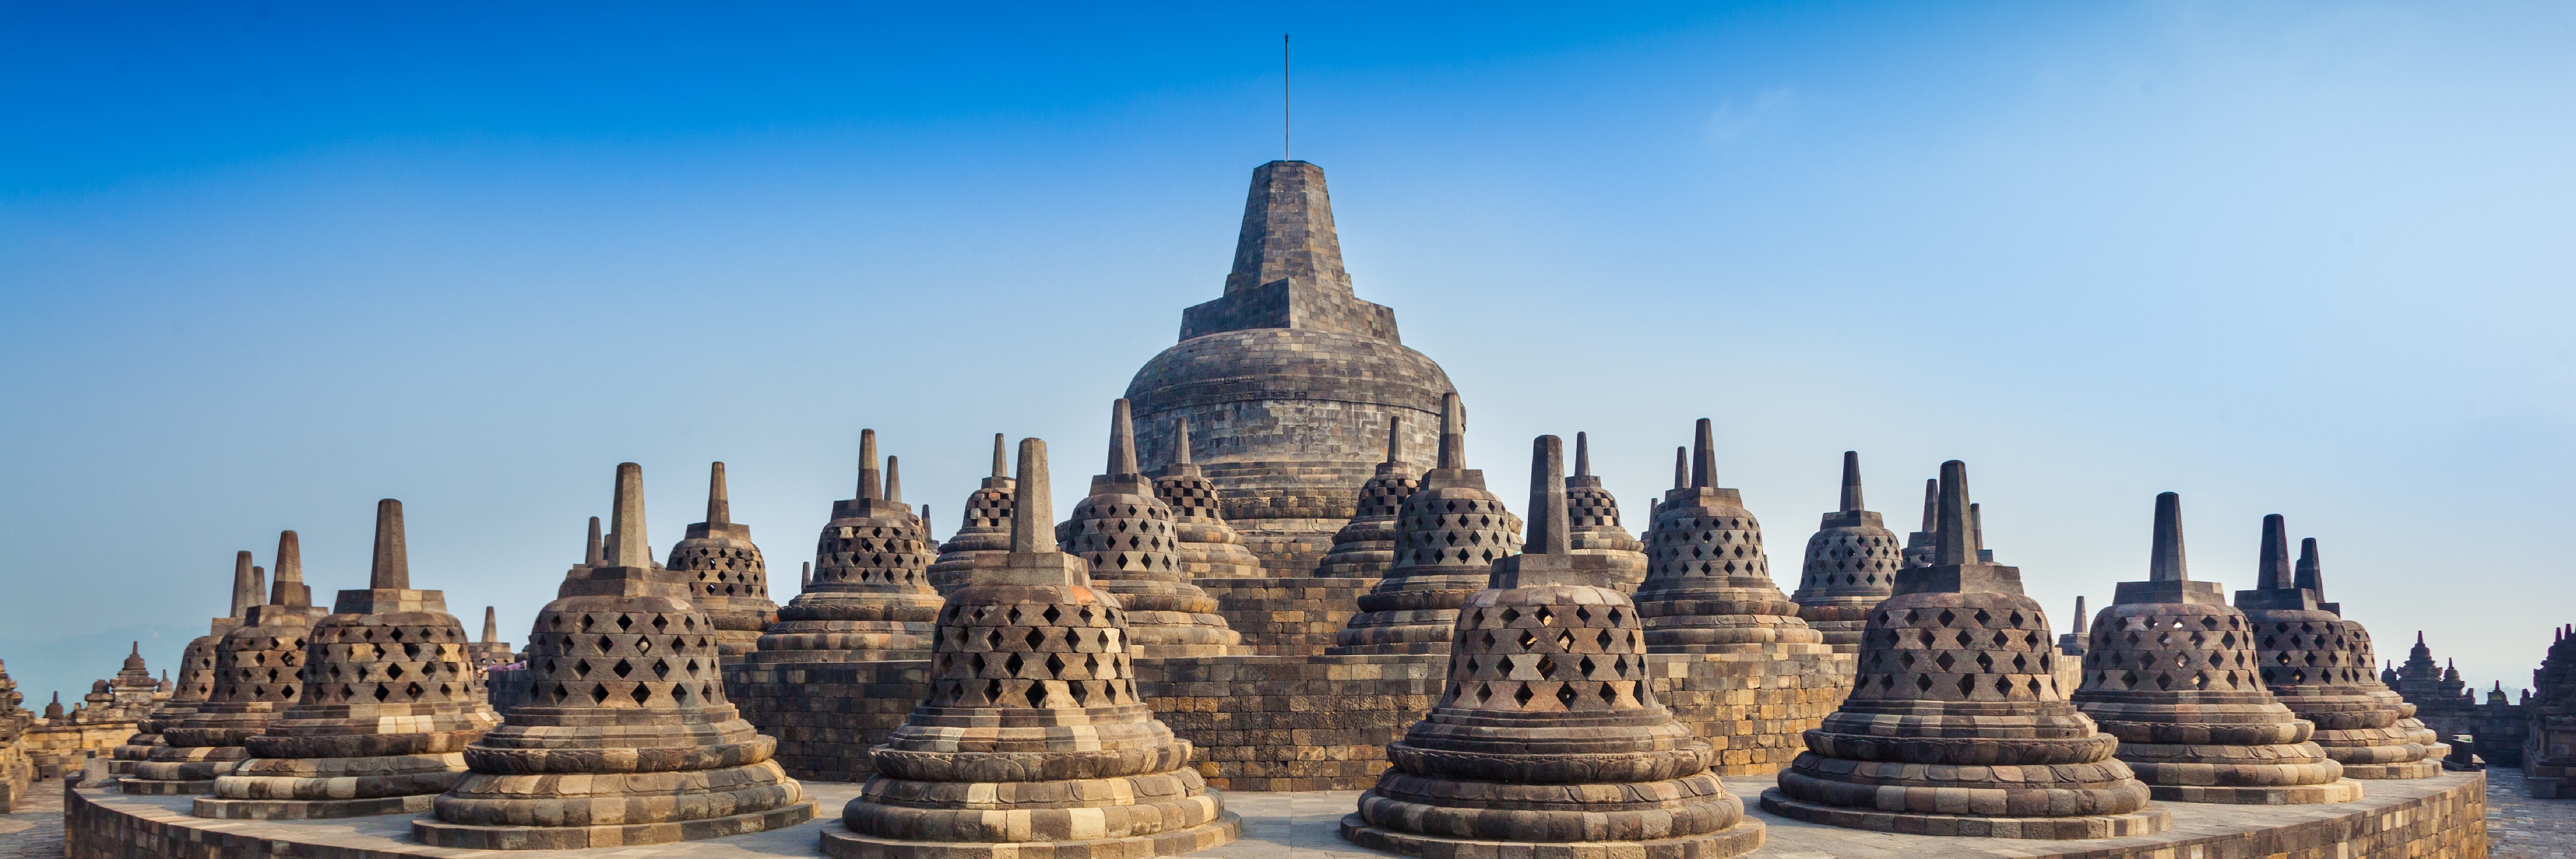 The Magnificent Borobudur Temple